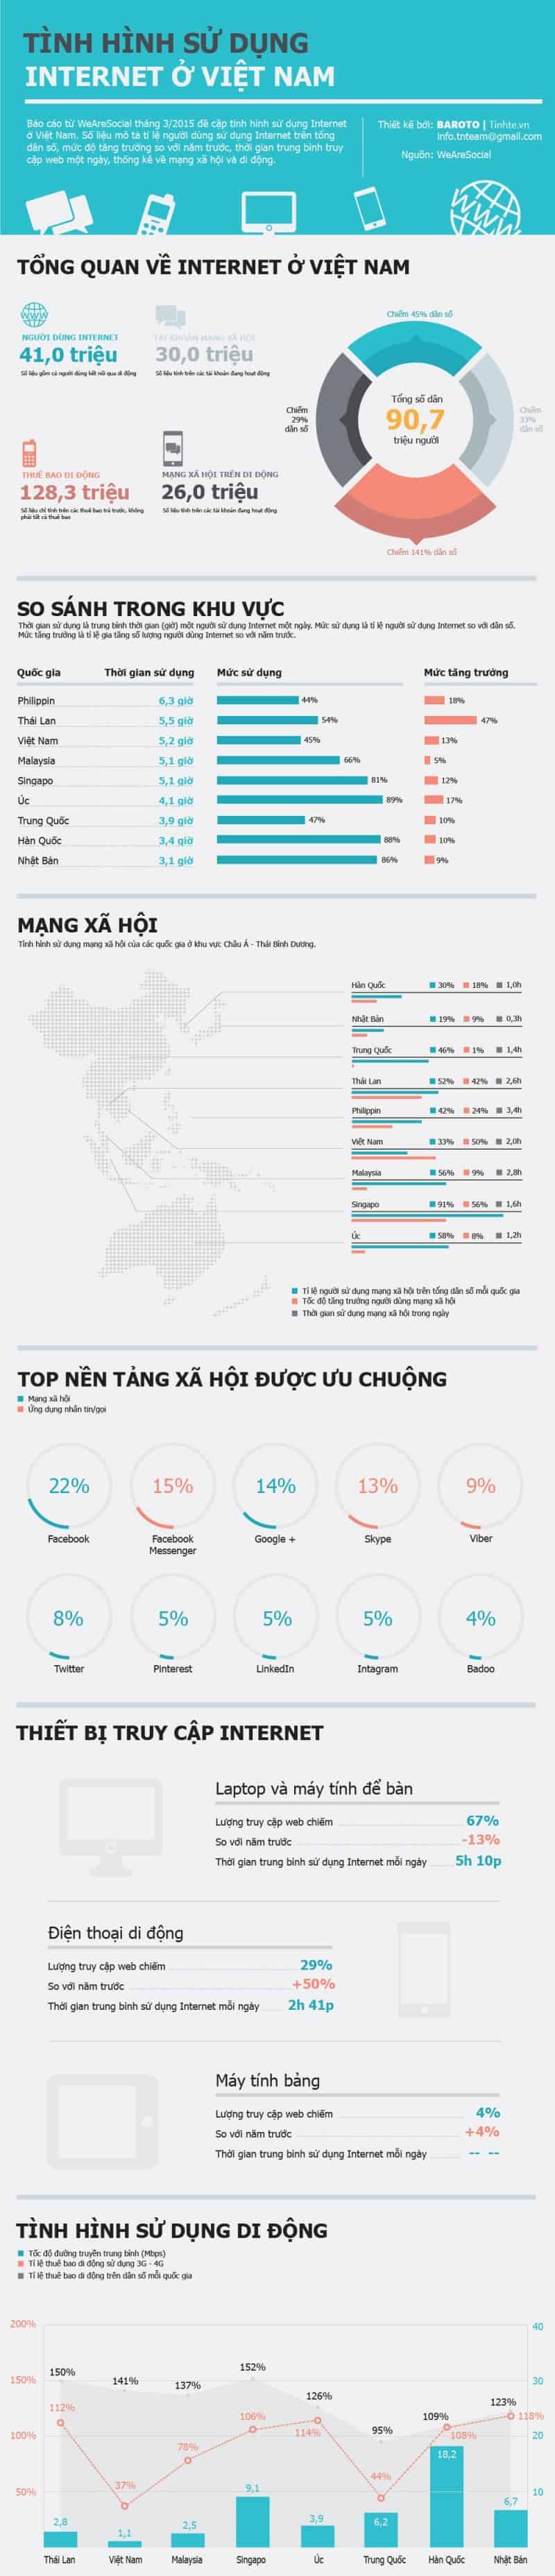 infographic-nguoi-viet-nam-danh-2-tieng-moi-ngay-cho-mang-xa-hoi